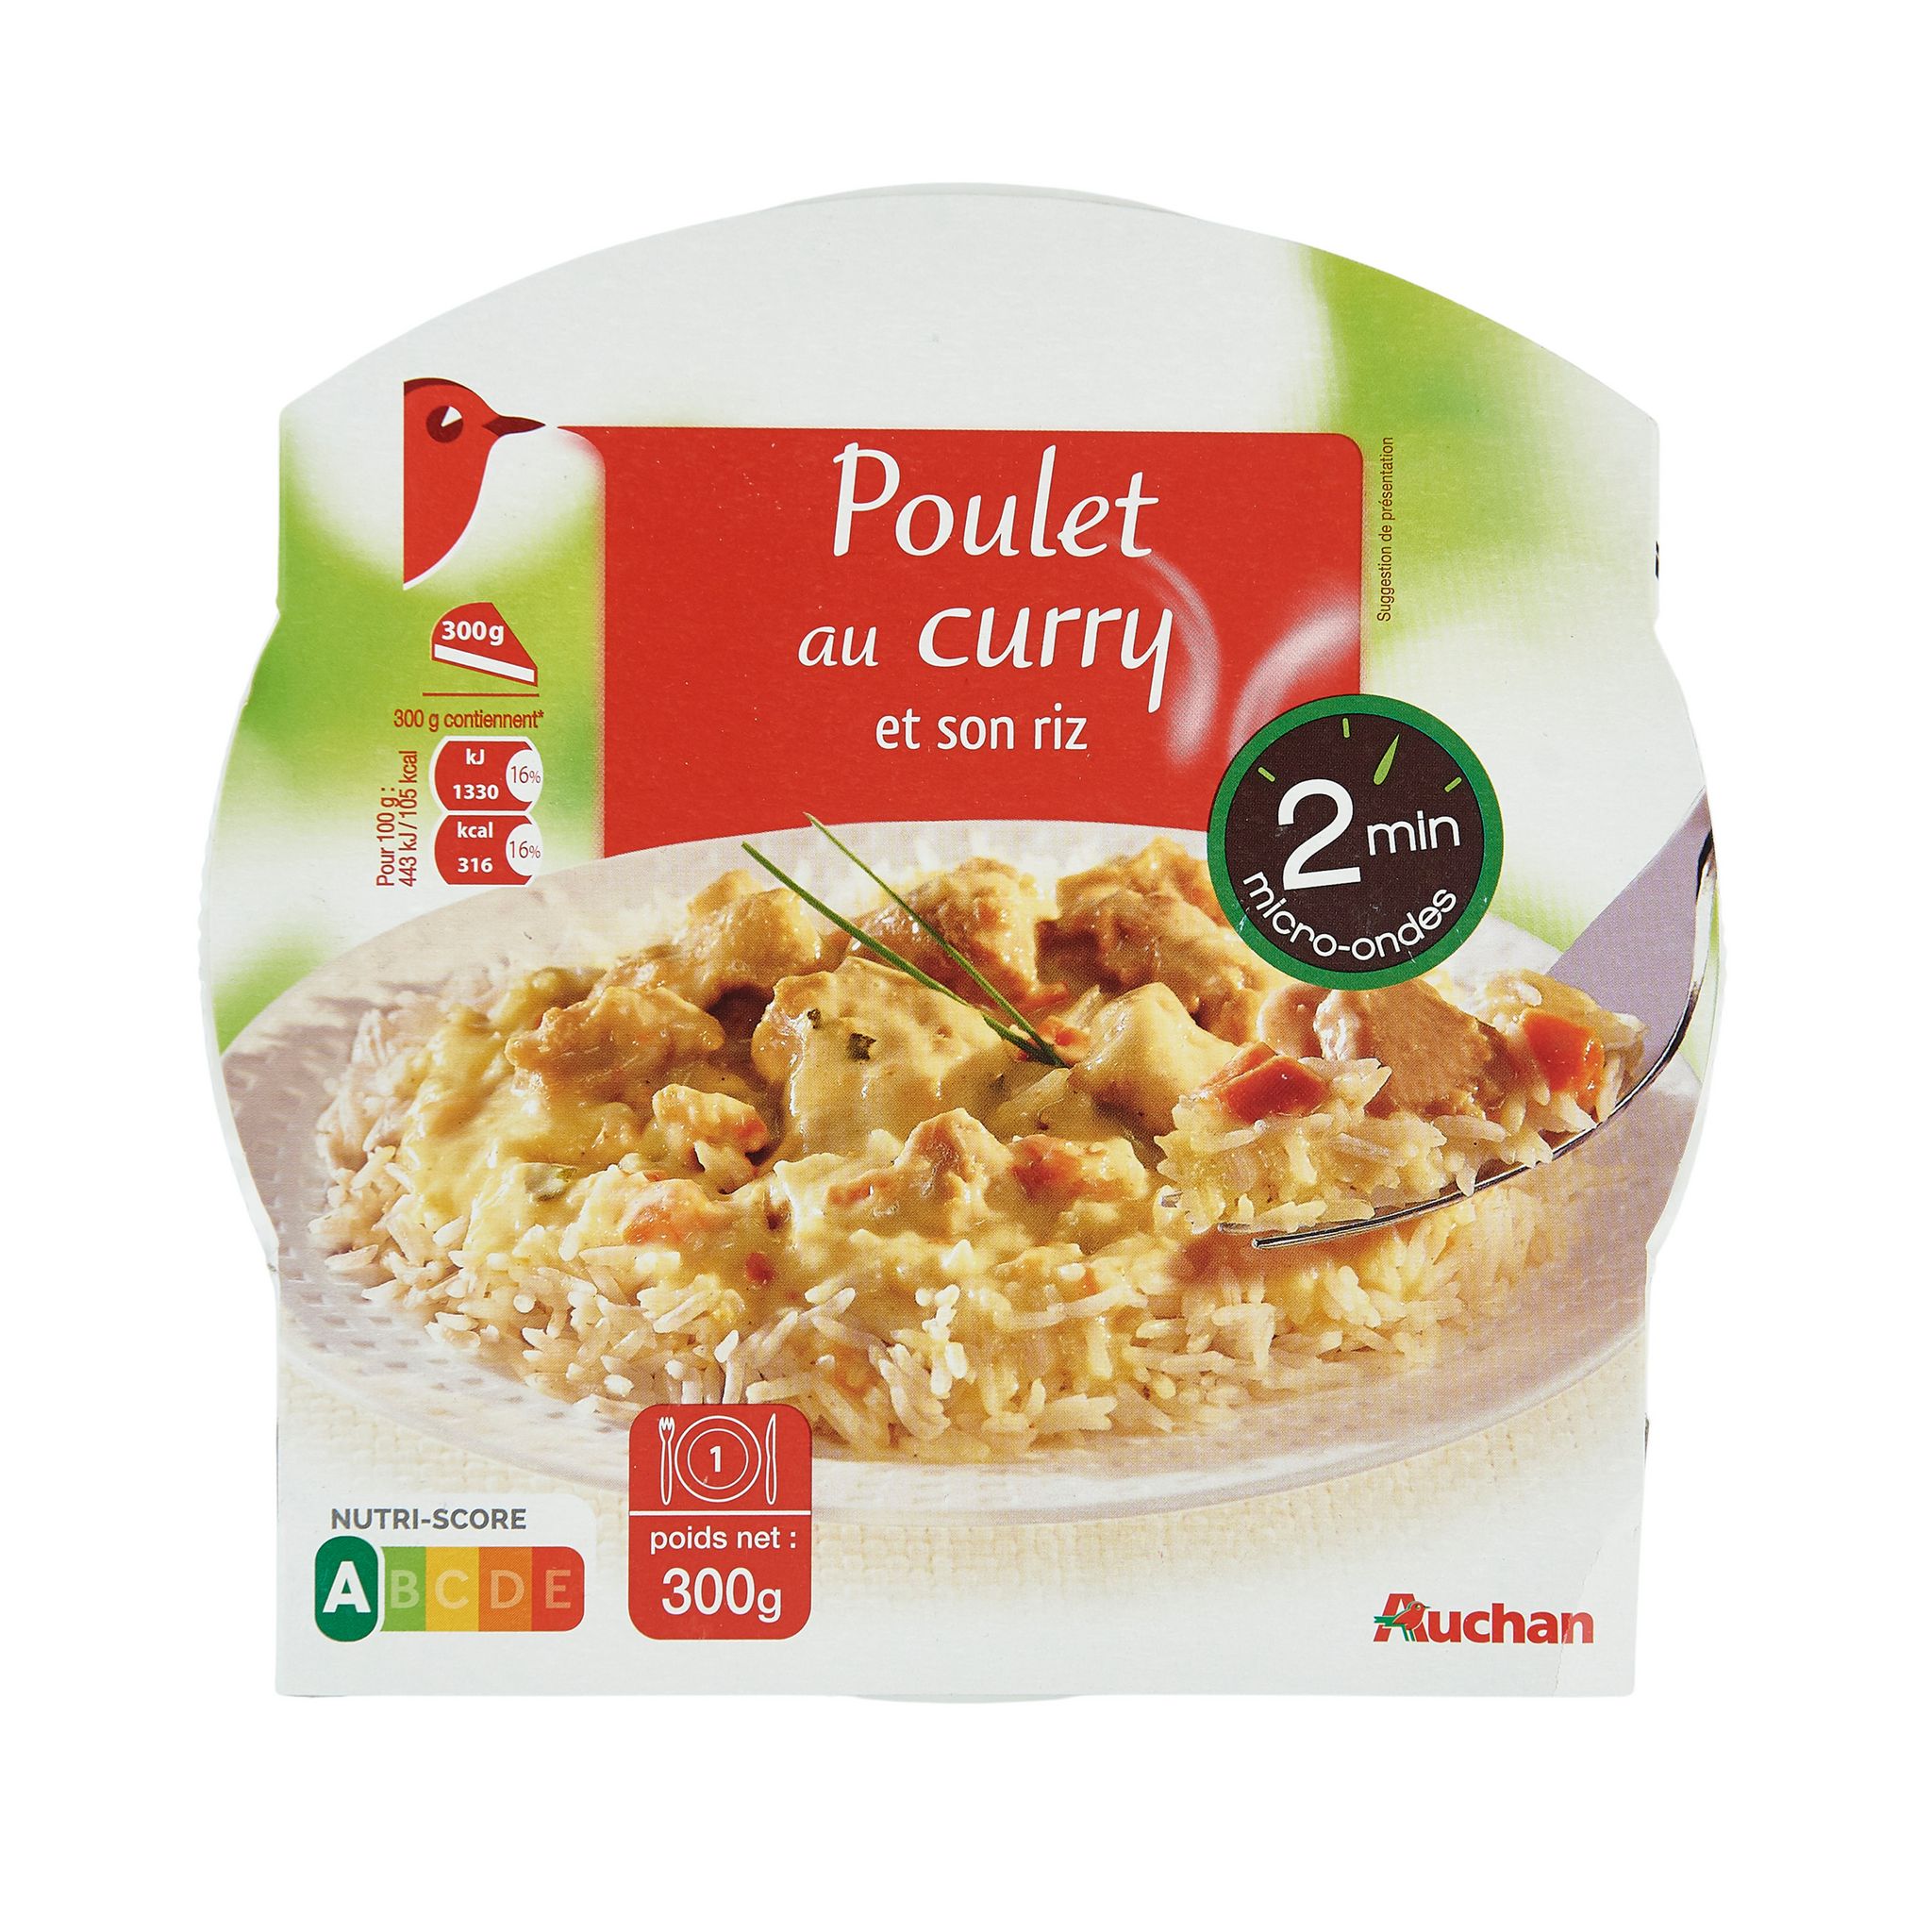 AUCHAN Poulet au curry et son riz barquette 2min au micro-ondes 1 personne  300g pas cher 